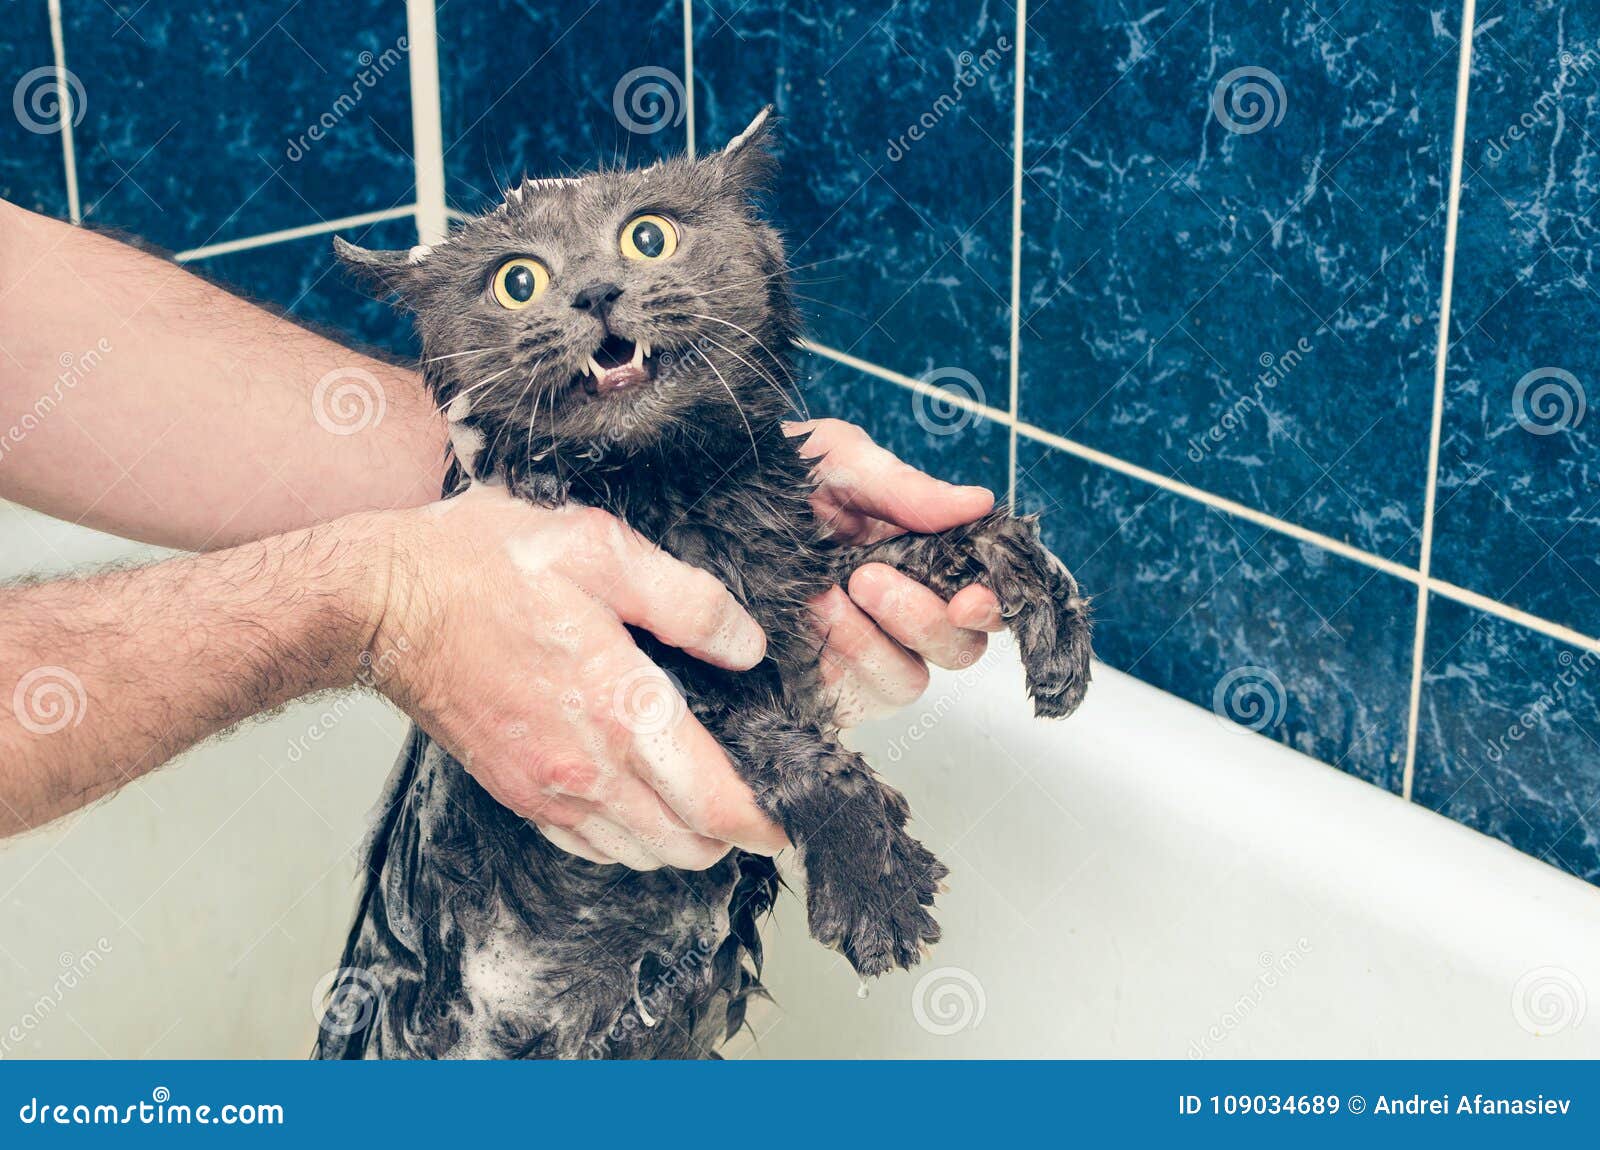 Кот в ванне говорит нормально. Кот в ванной. Кошка боится воды. Серый котенок купается. Нормально котик в ванной.